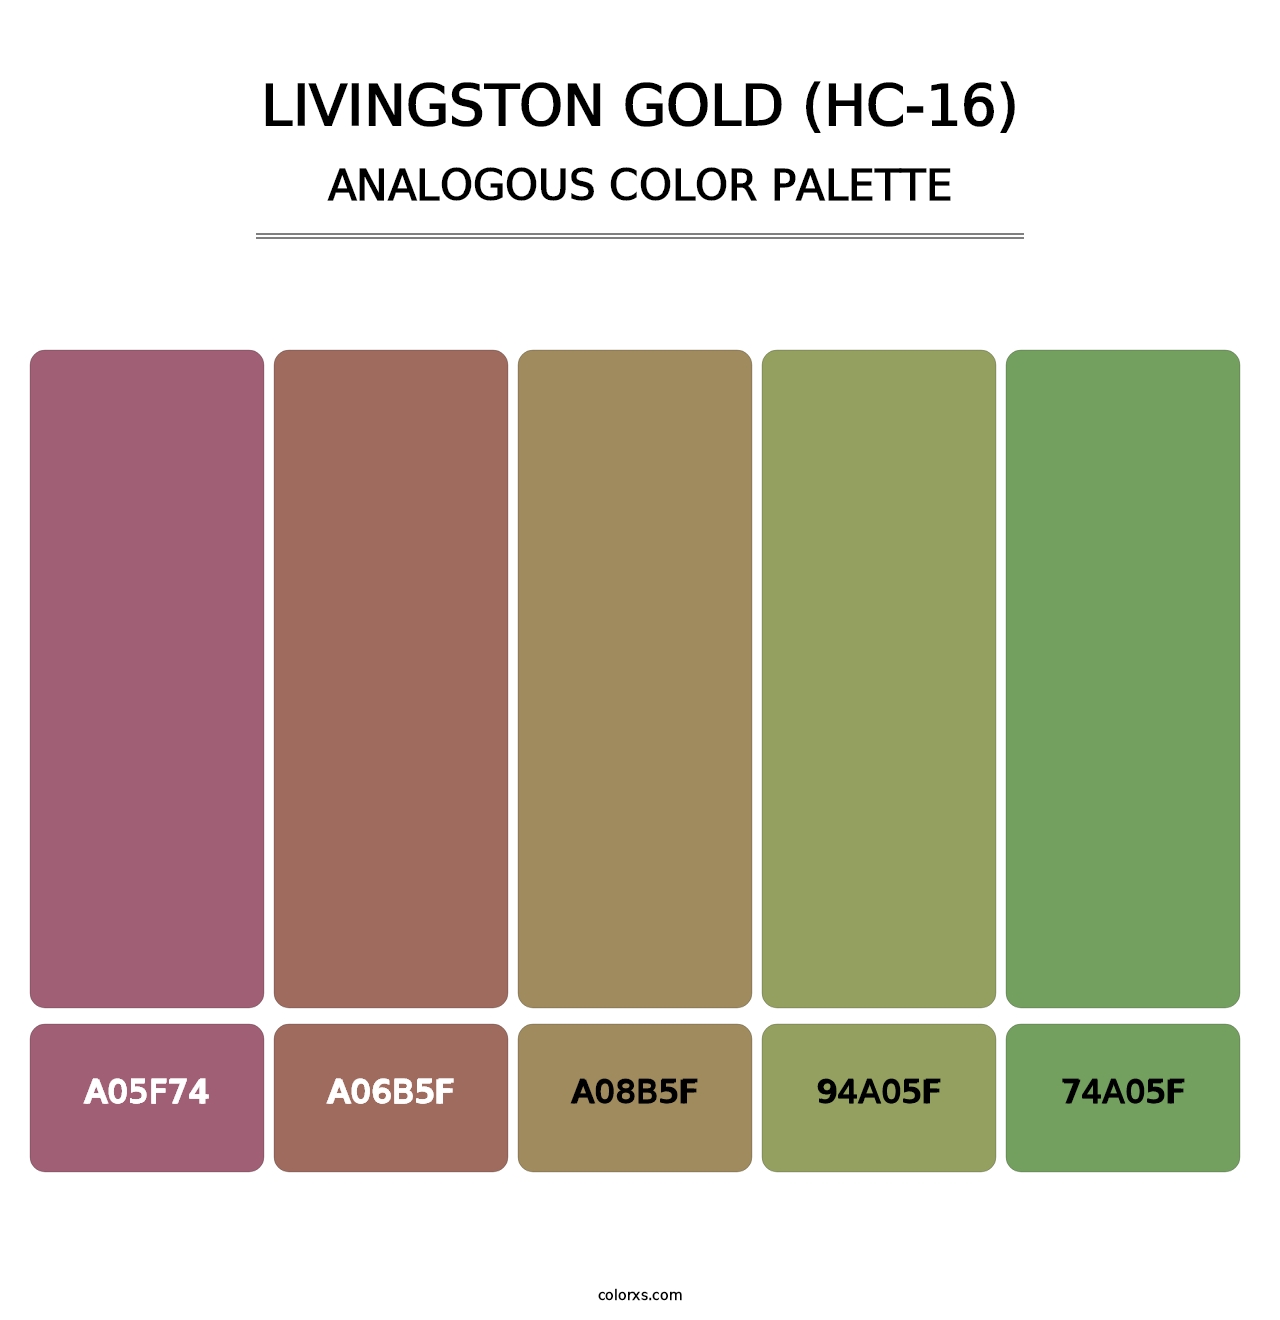 Livingston Gold (HC-16) - Analogous Color Palette